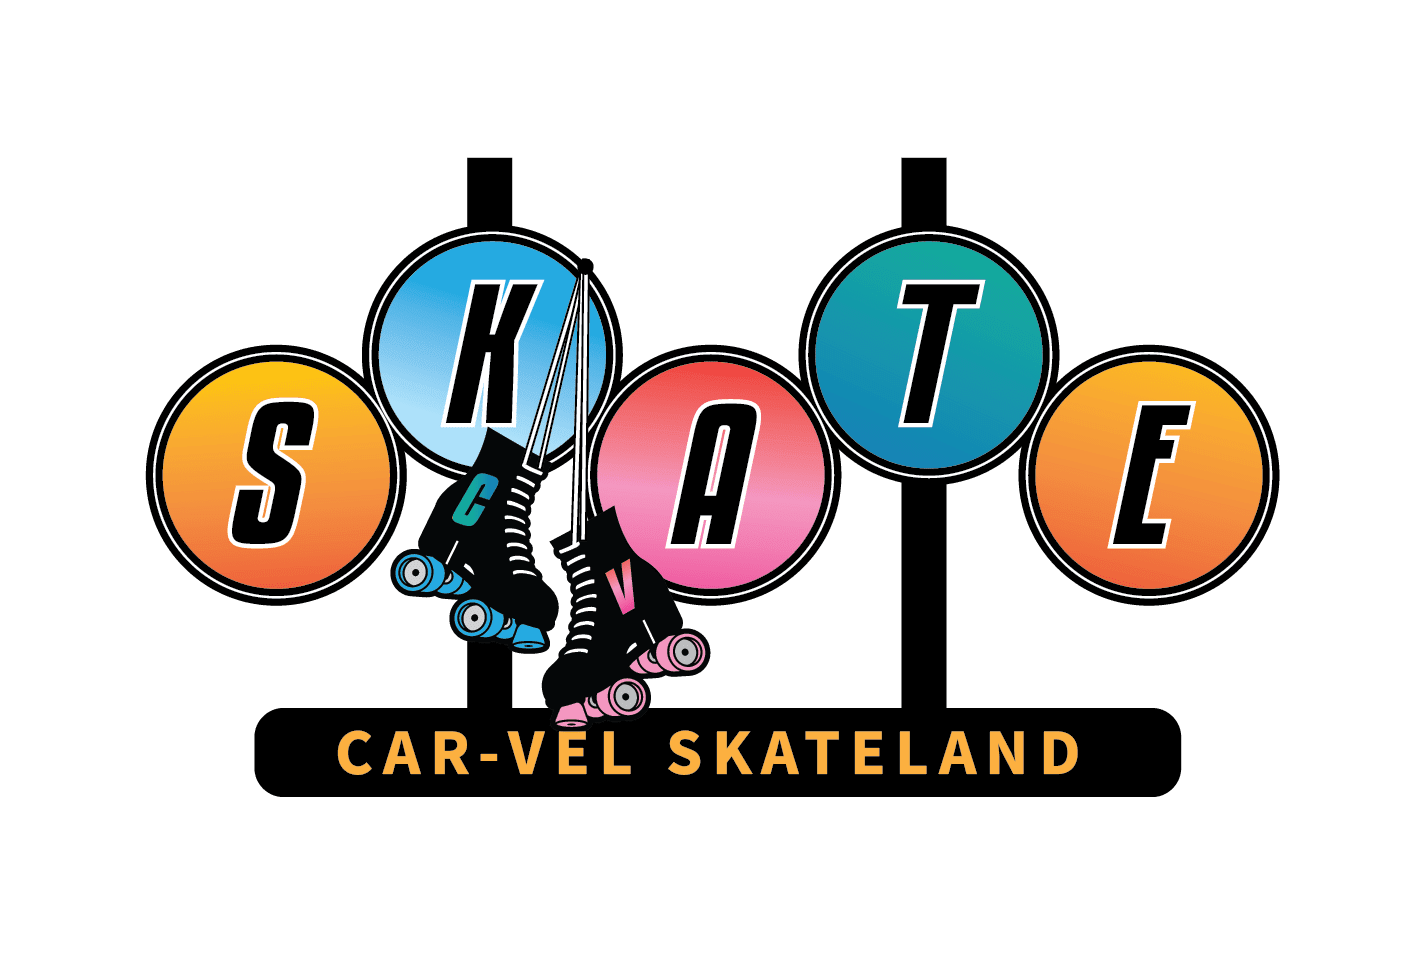 Car-Vel Skateland South